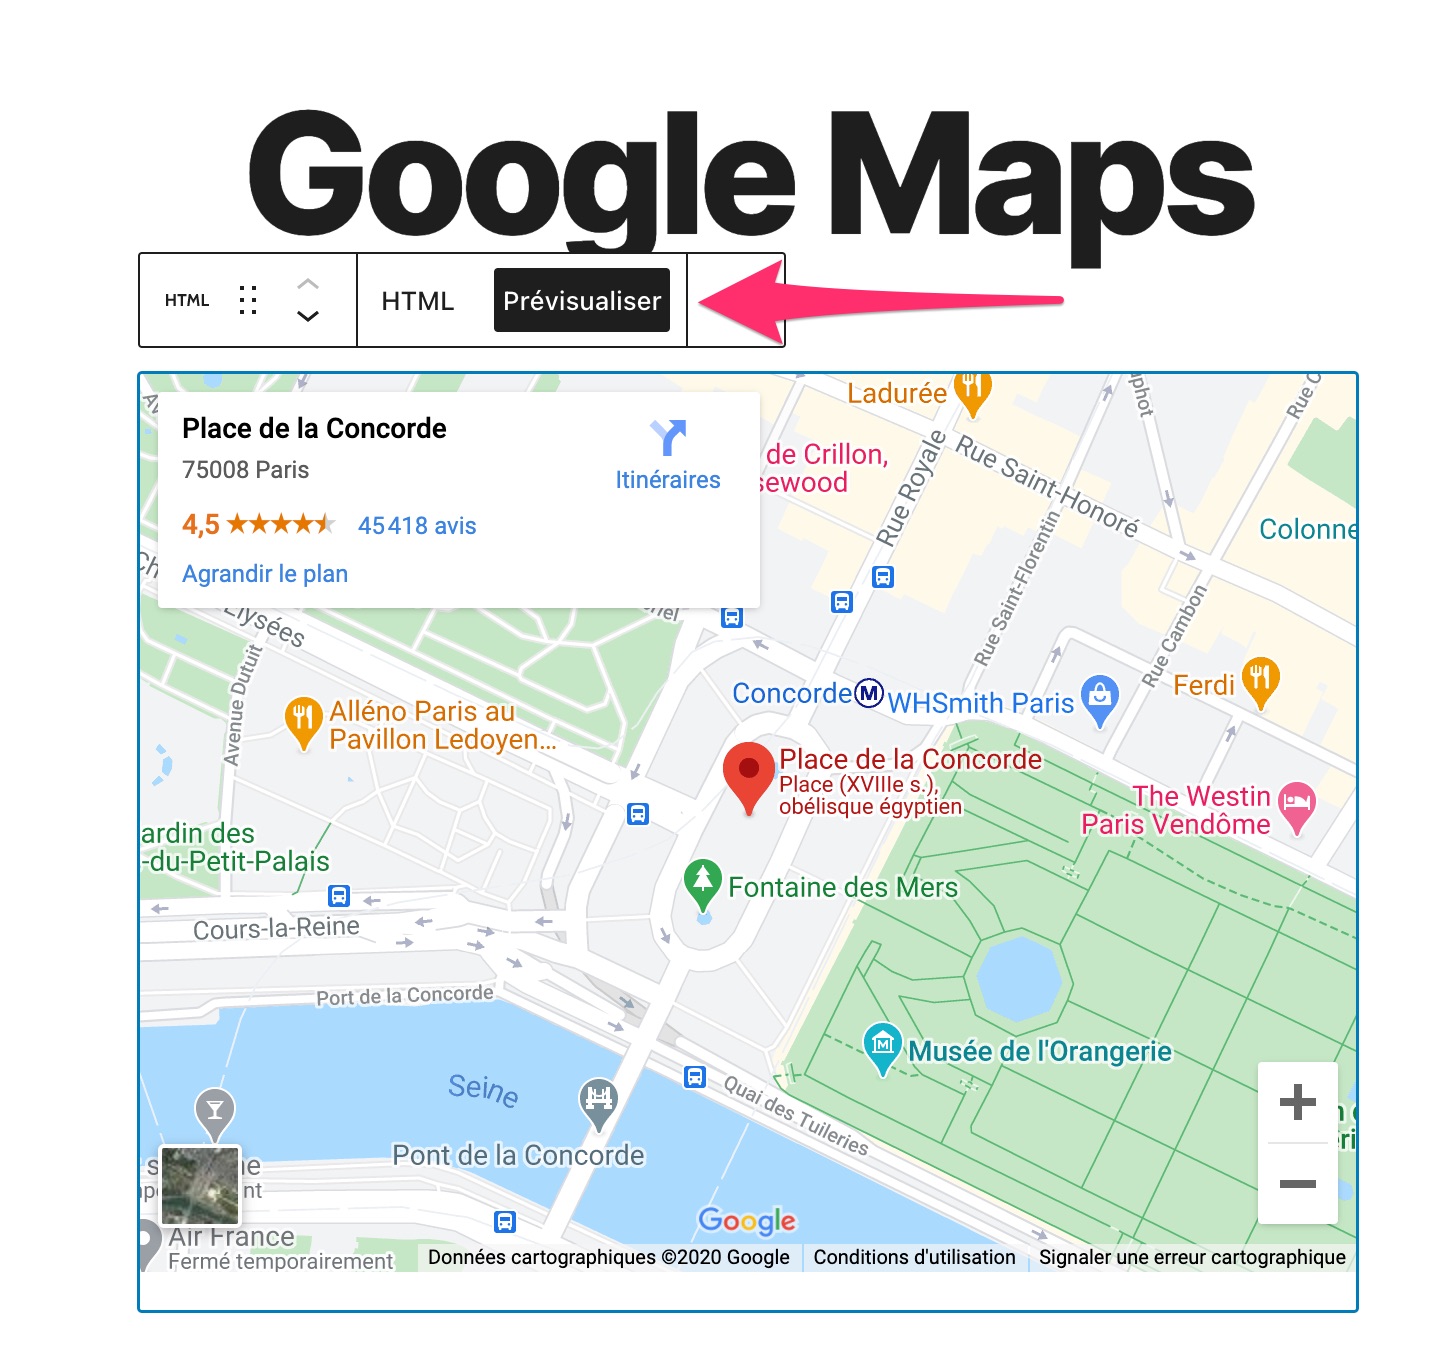 Prévisualiser une Google Map